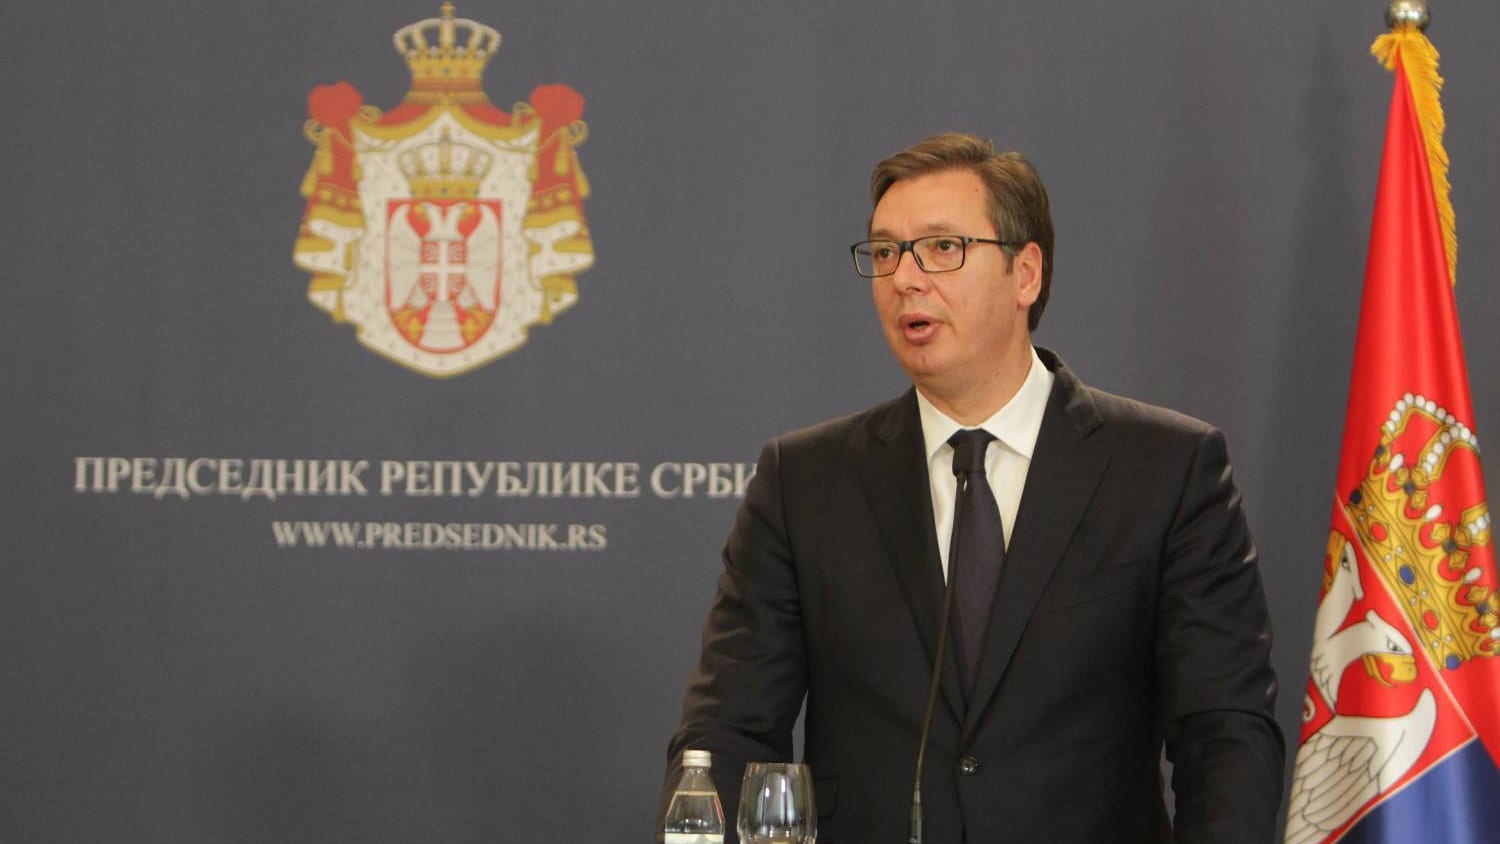 Vučić: Mržnja nikome ne donosi dobro 1